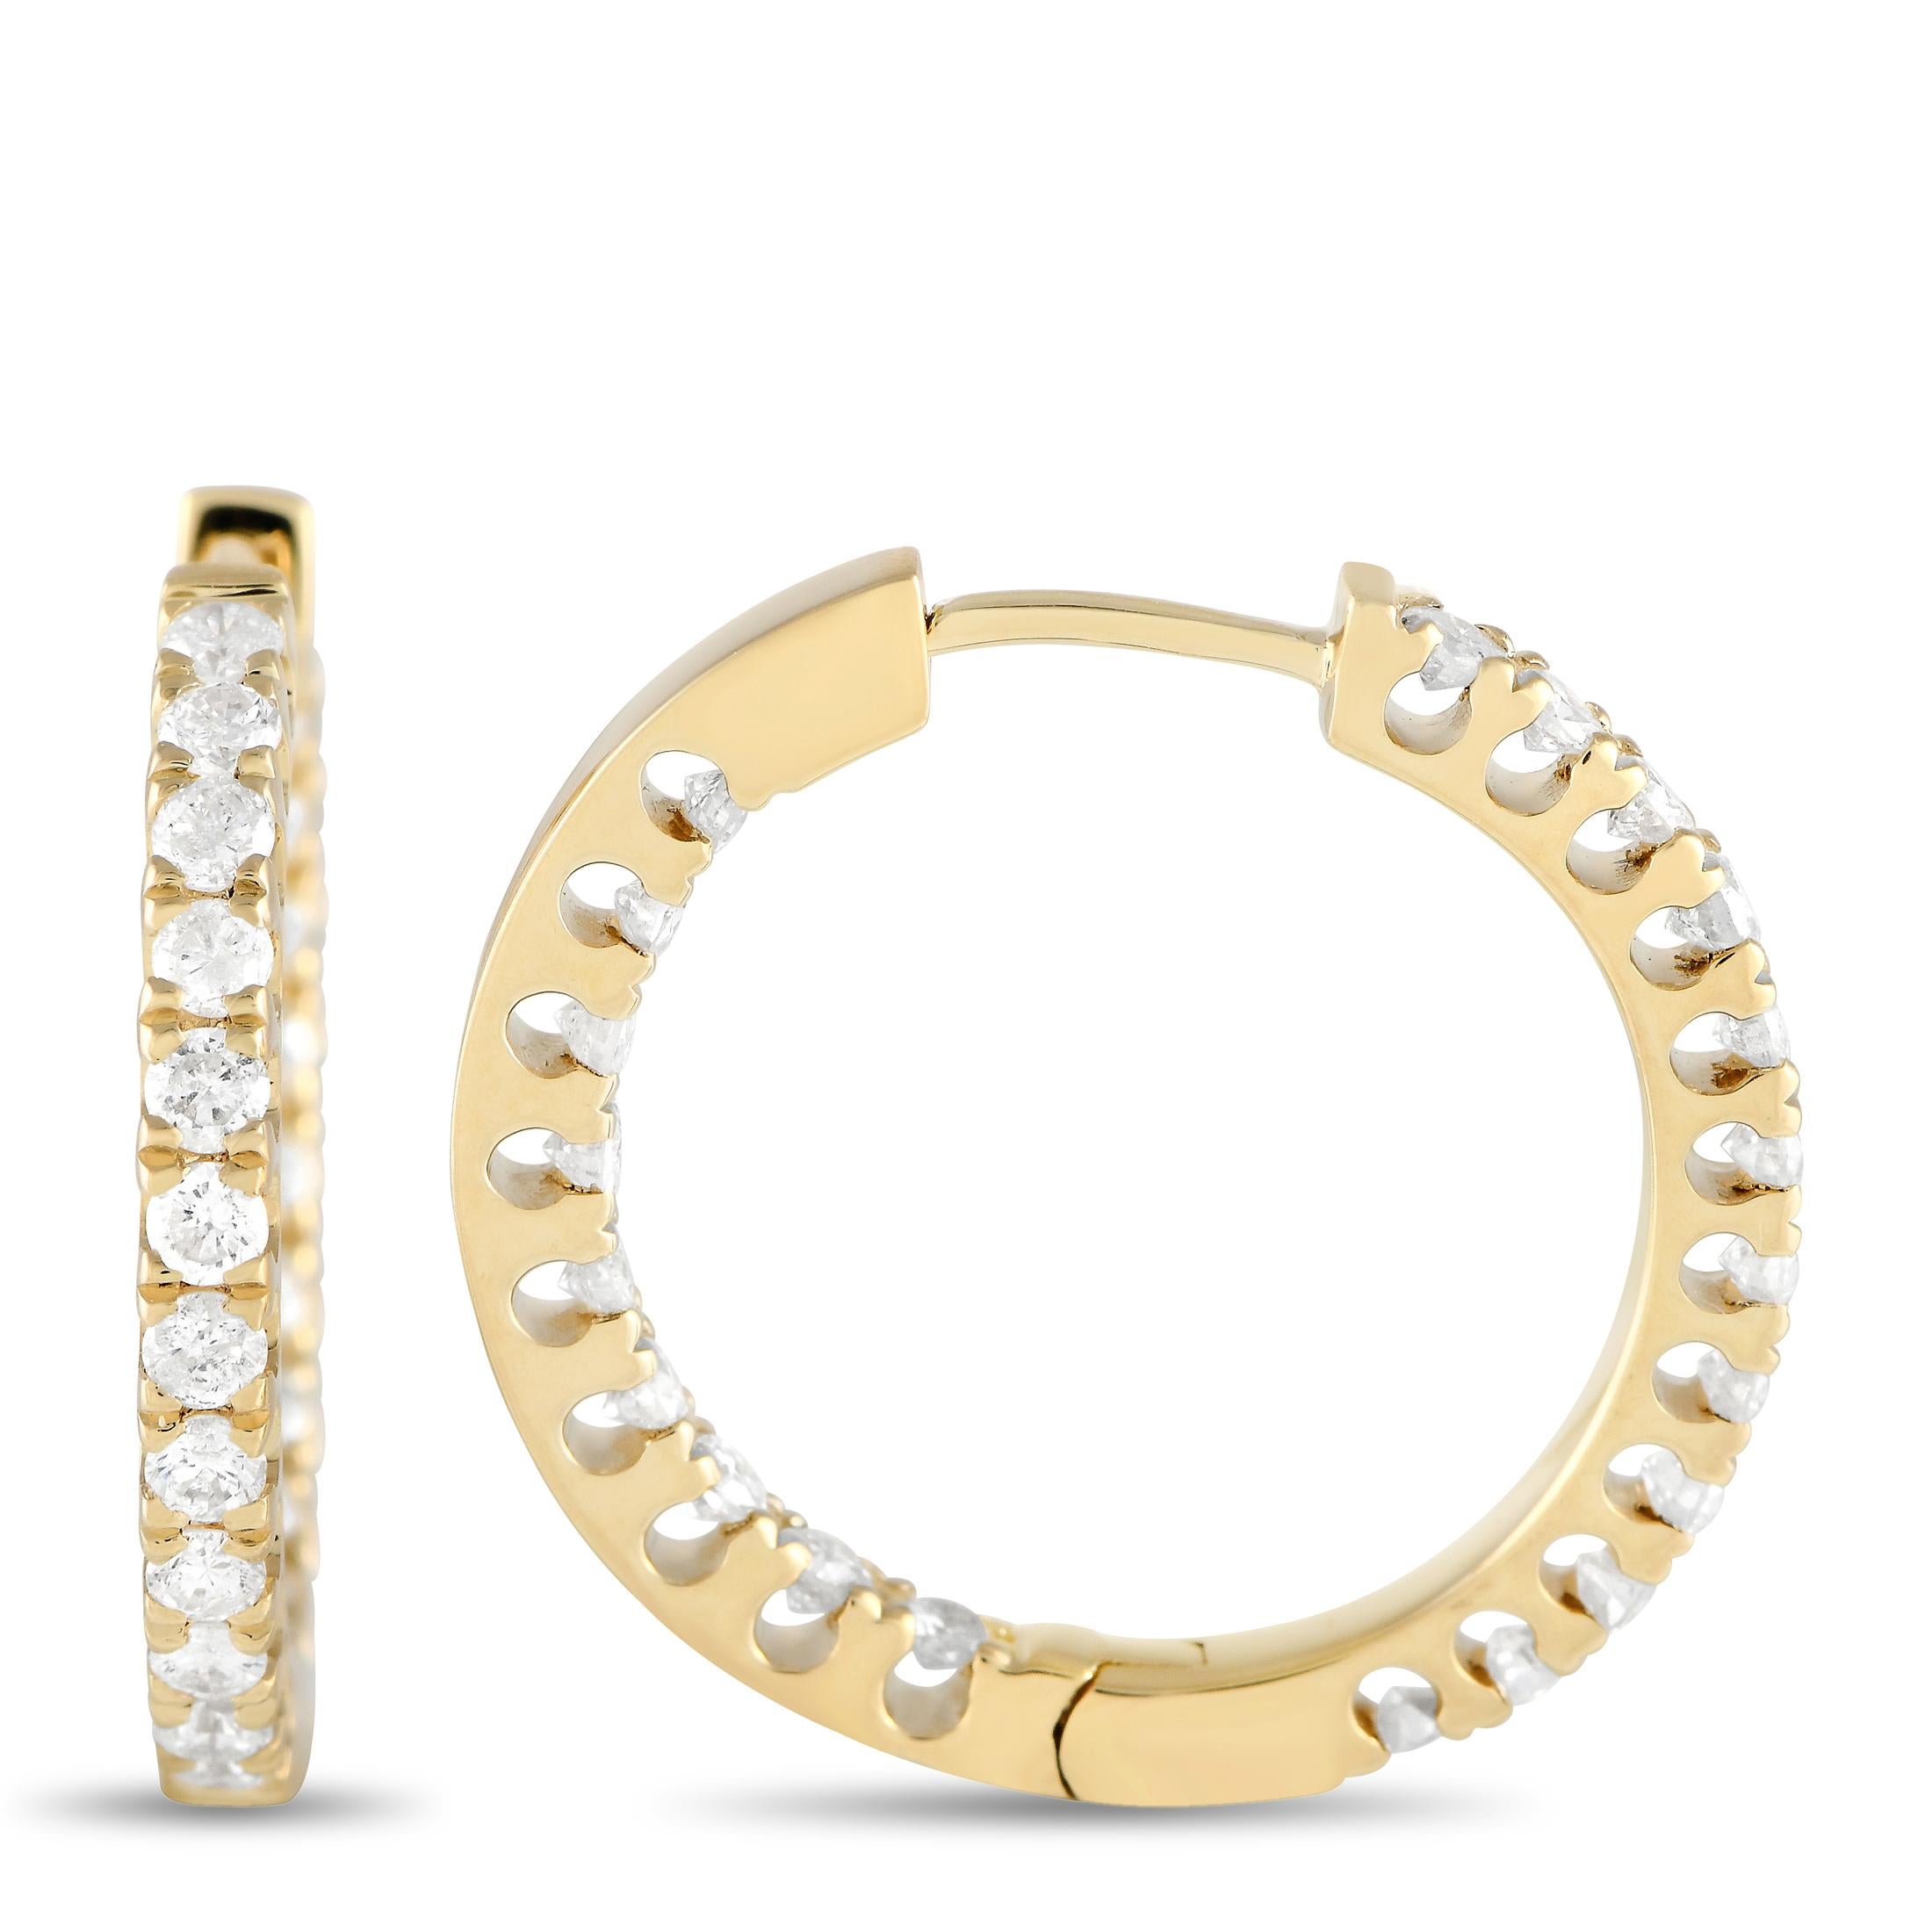 Diese tadellos gefertigten Ohrringe funkeln und glänzen aus jedem Blickwinkel. Diamanten von insgesamt 1,0 Karat glänzen hell von ihrem Platz in der opulenten 14K Gelbgold Fassung, die 0,75